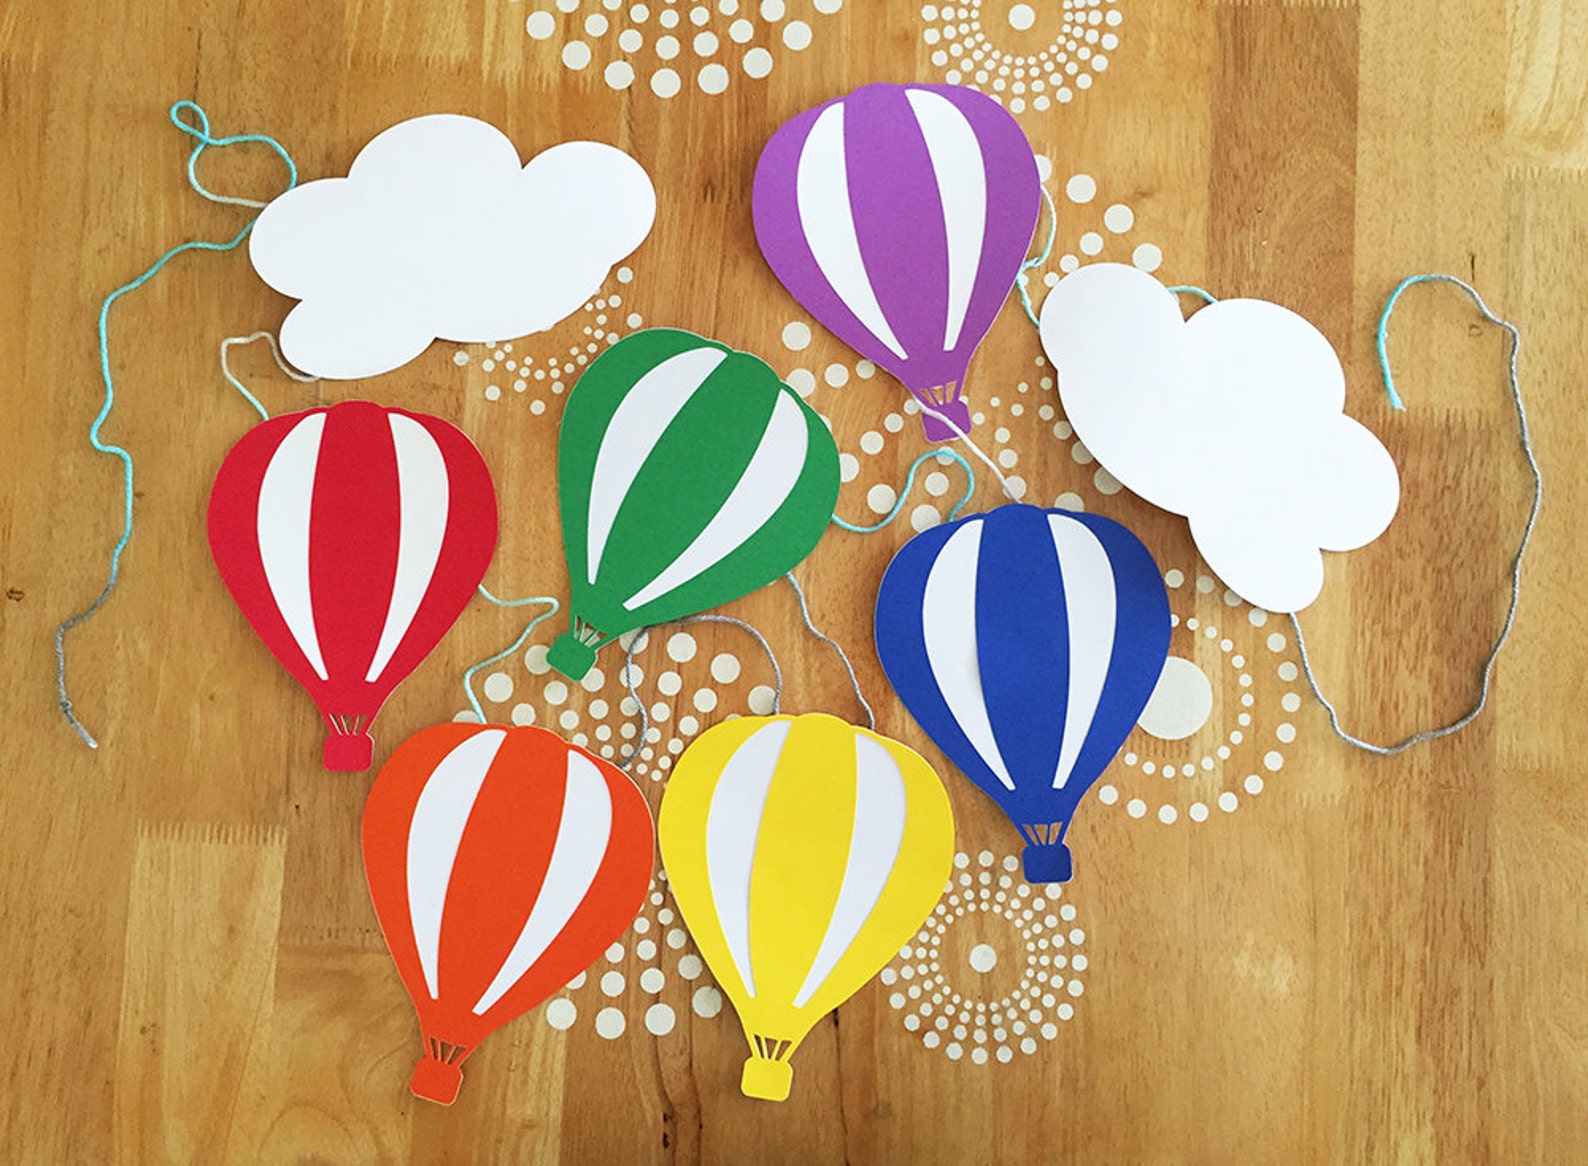 Мастер класс воздушный шар. Объемный воздушный шар. Воздушный шар из бумаги. Аппликация воздушные шары. Воздушный шар из цветной бумаги.